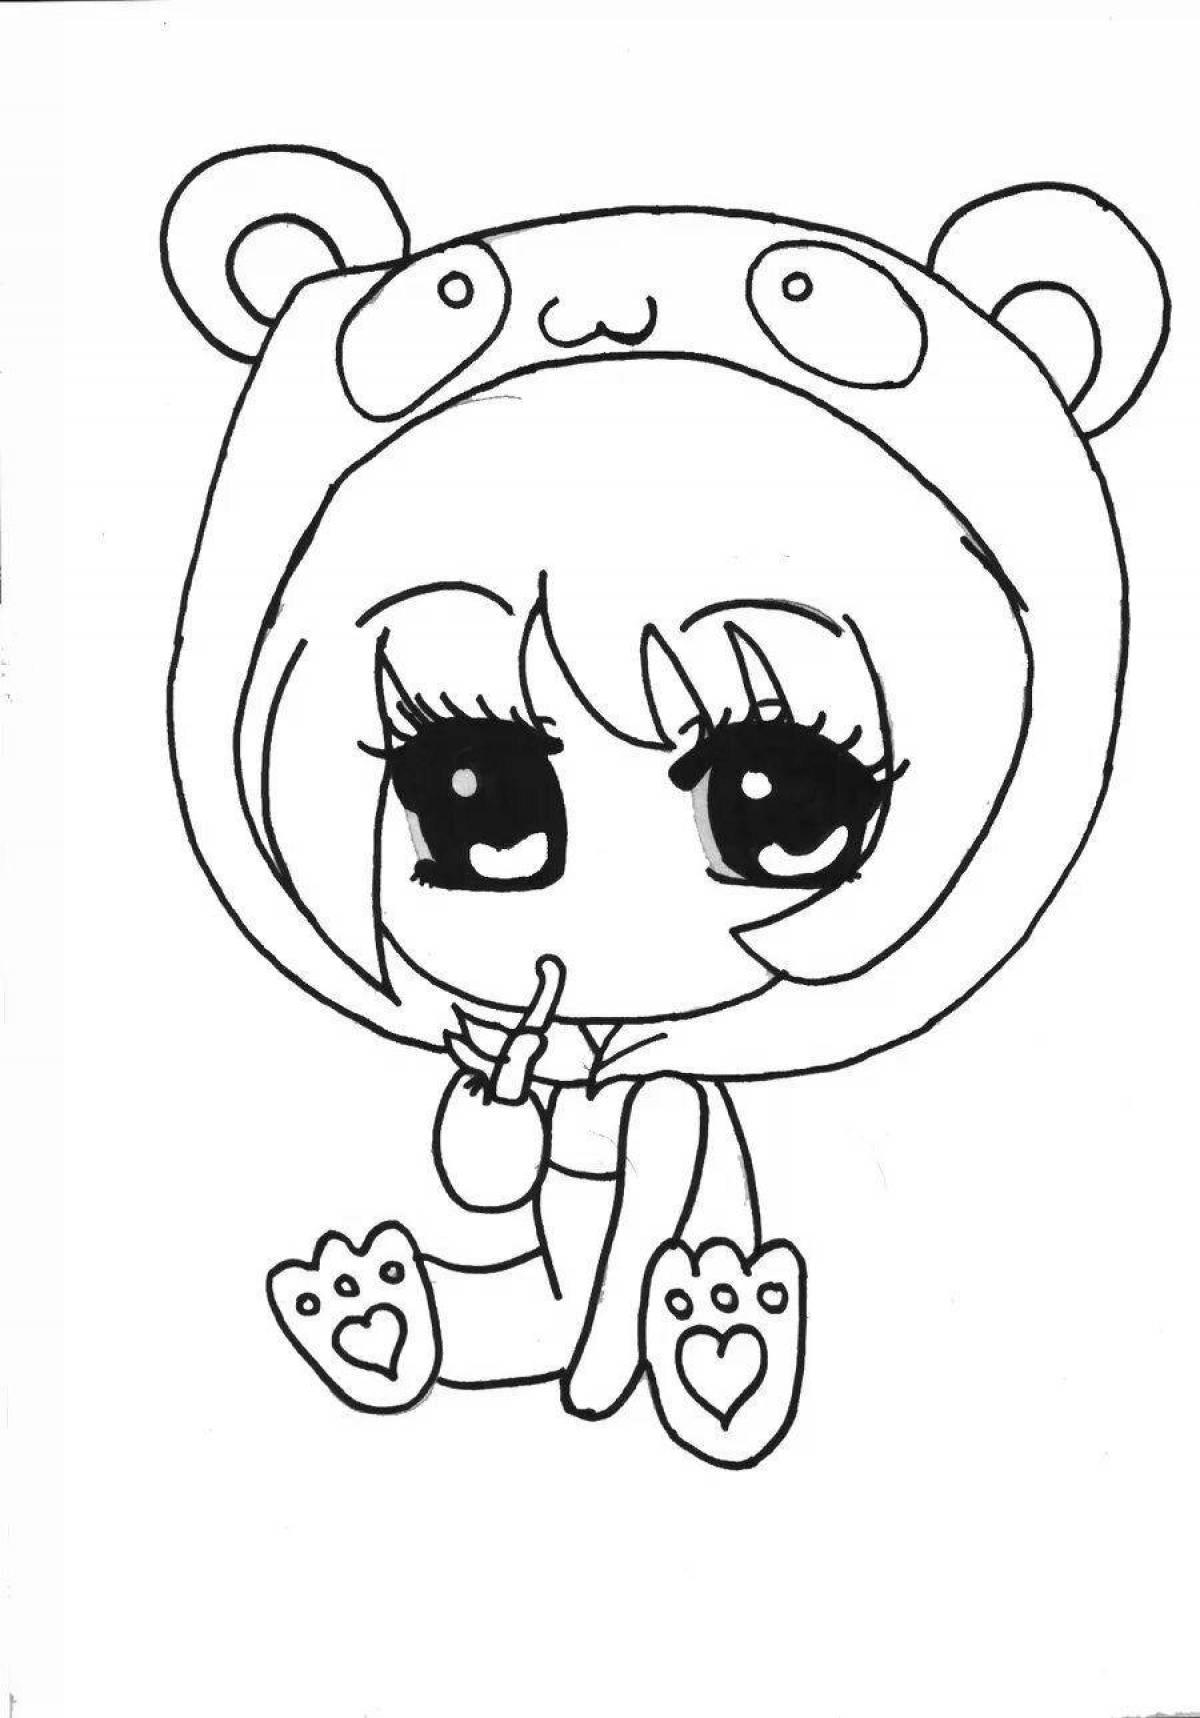 Glamorous panda coloring page for girls